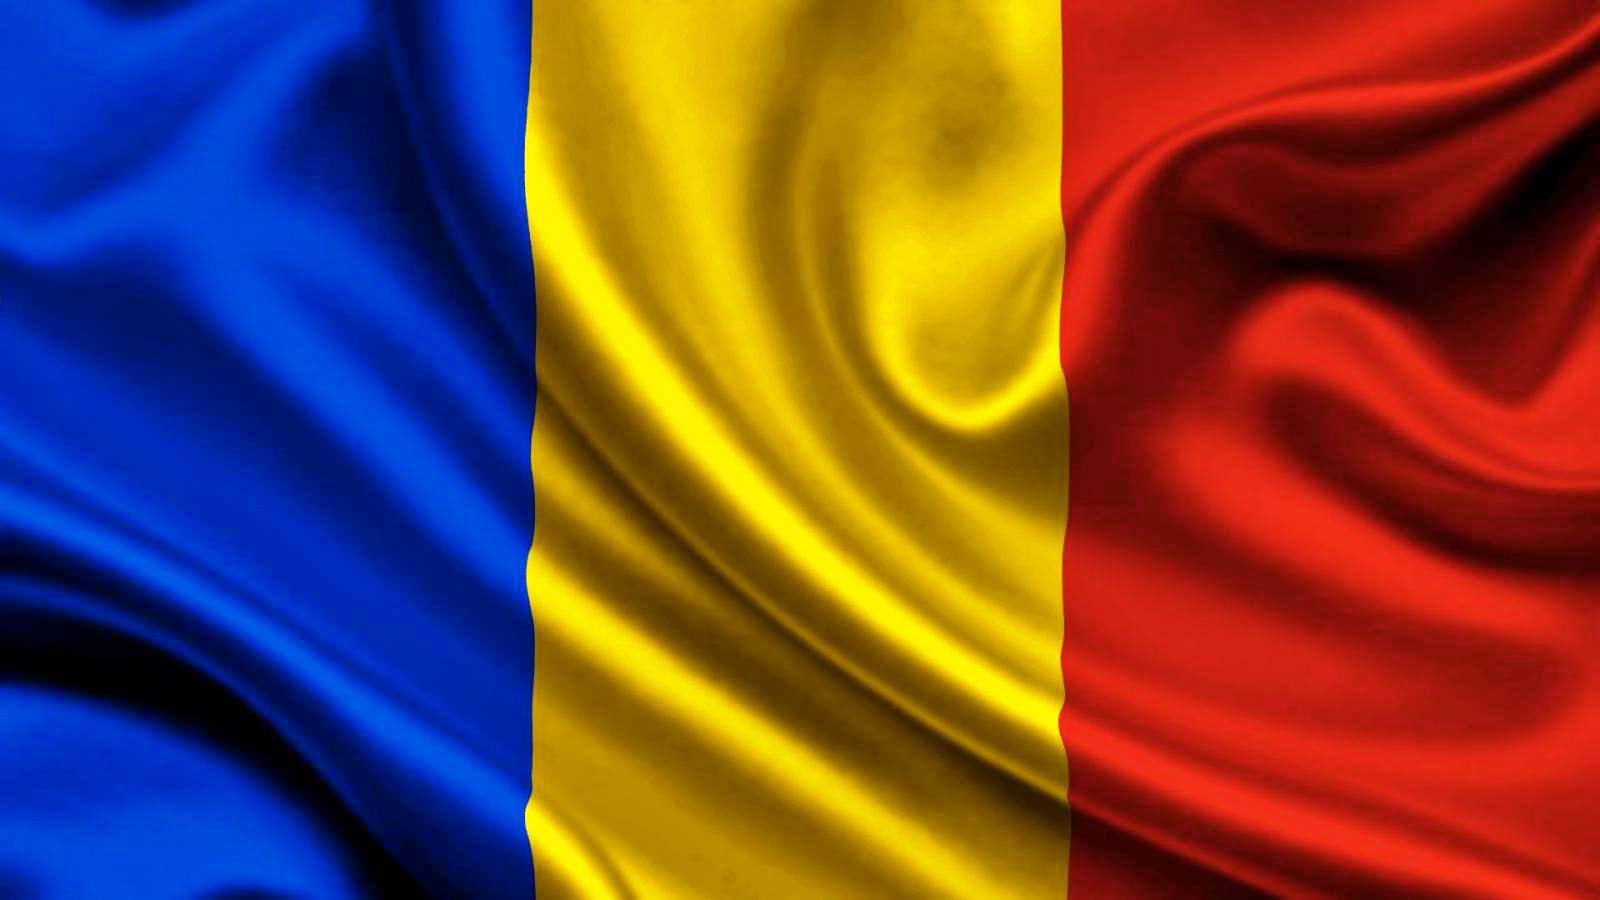 Armia rumuńska powiadomiła armię rumuńską o niebezpieczeństwie związanym z minami morskimi na Morzu Czarnym